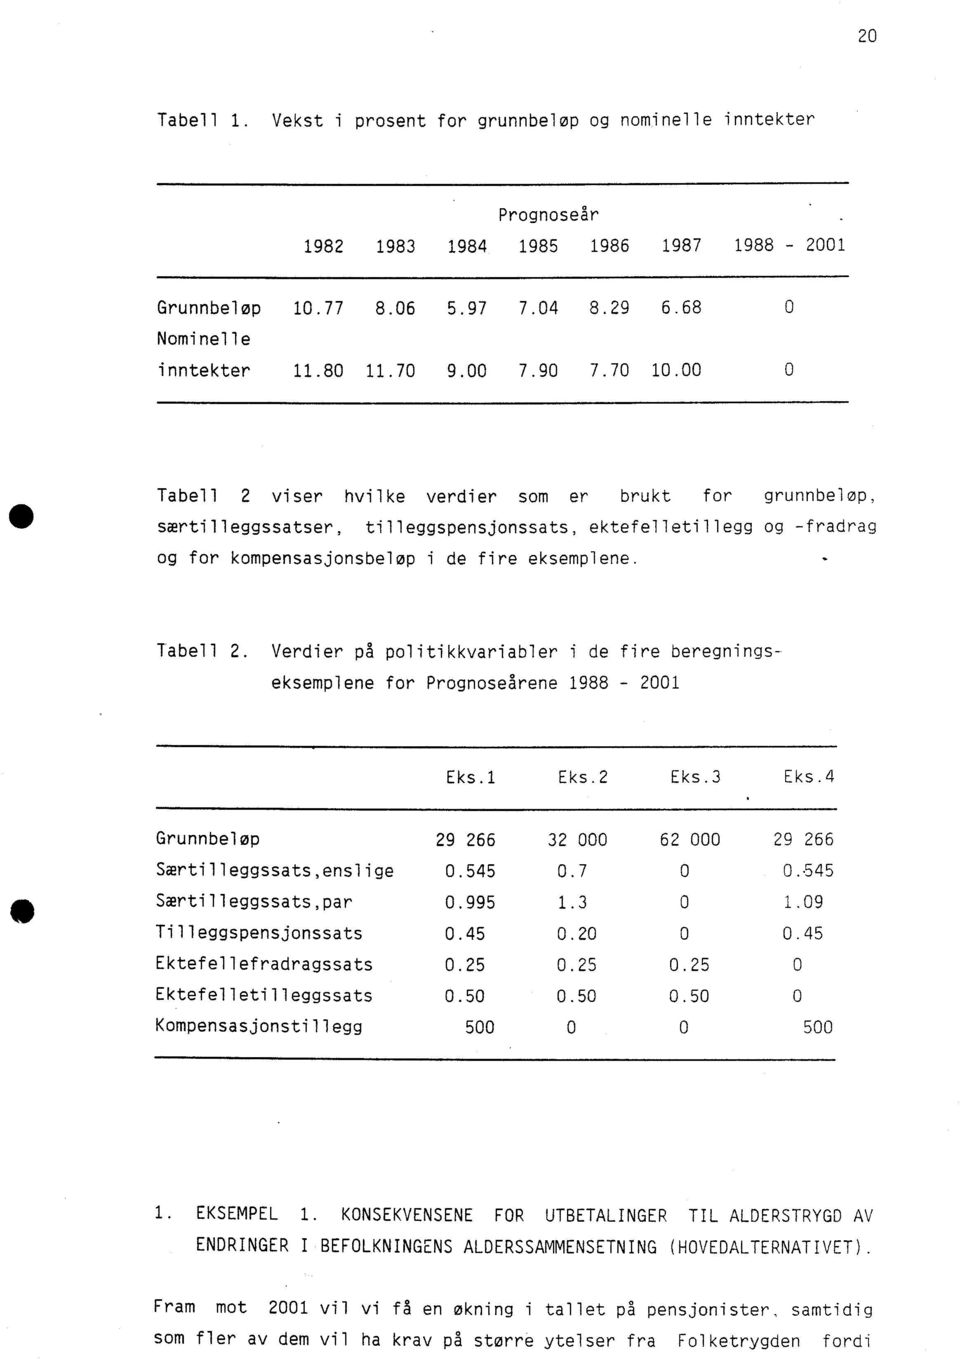 Tabell 2. Verdier på politikkvariabler i de fire beregningseksemplene for Prognoseårene 1988-2001 Eks.1 Eks.2 Eks.3 Eks.4 Grunnbeløp 29 266 32 000 62 000 29 266 Særtilleggssats,enslige 0.545 0.7 0 0.